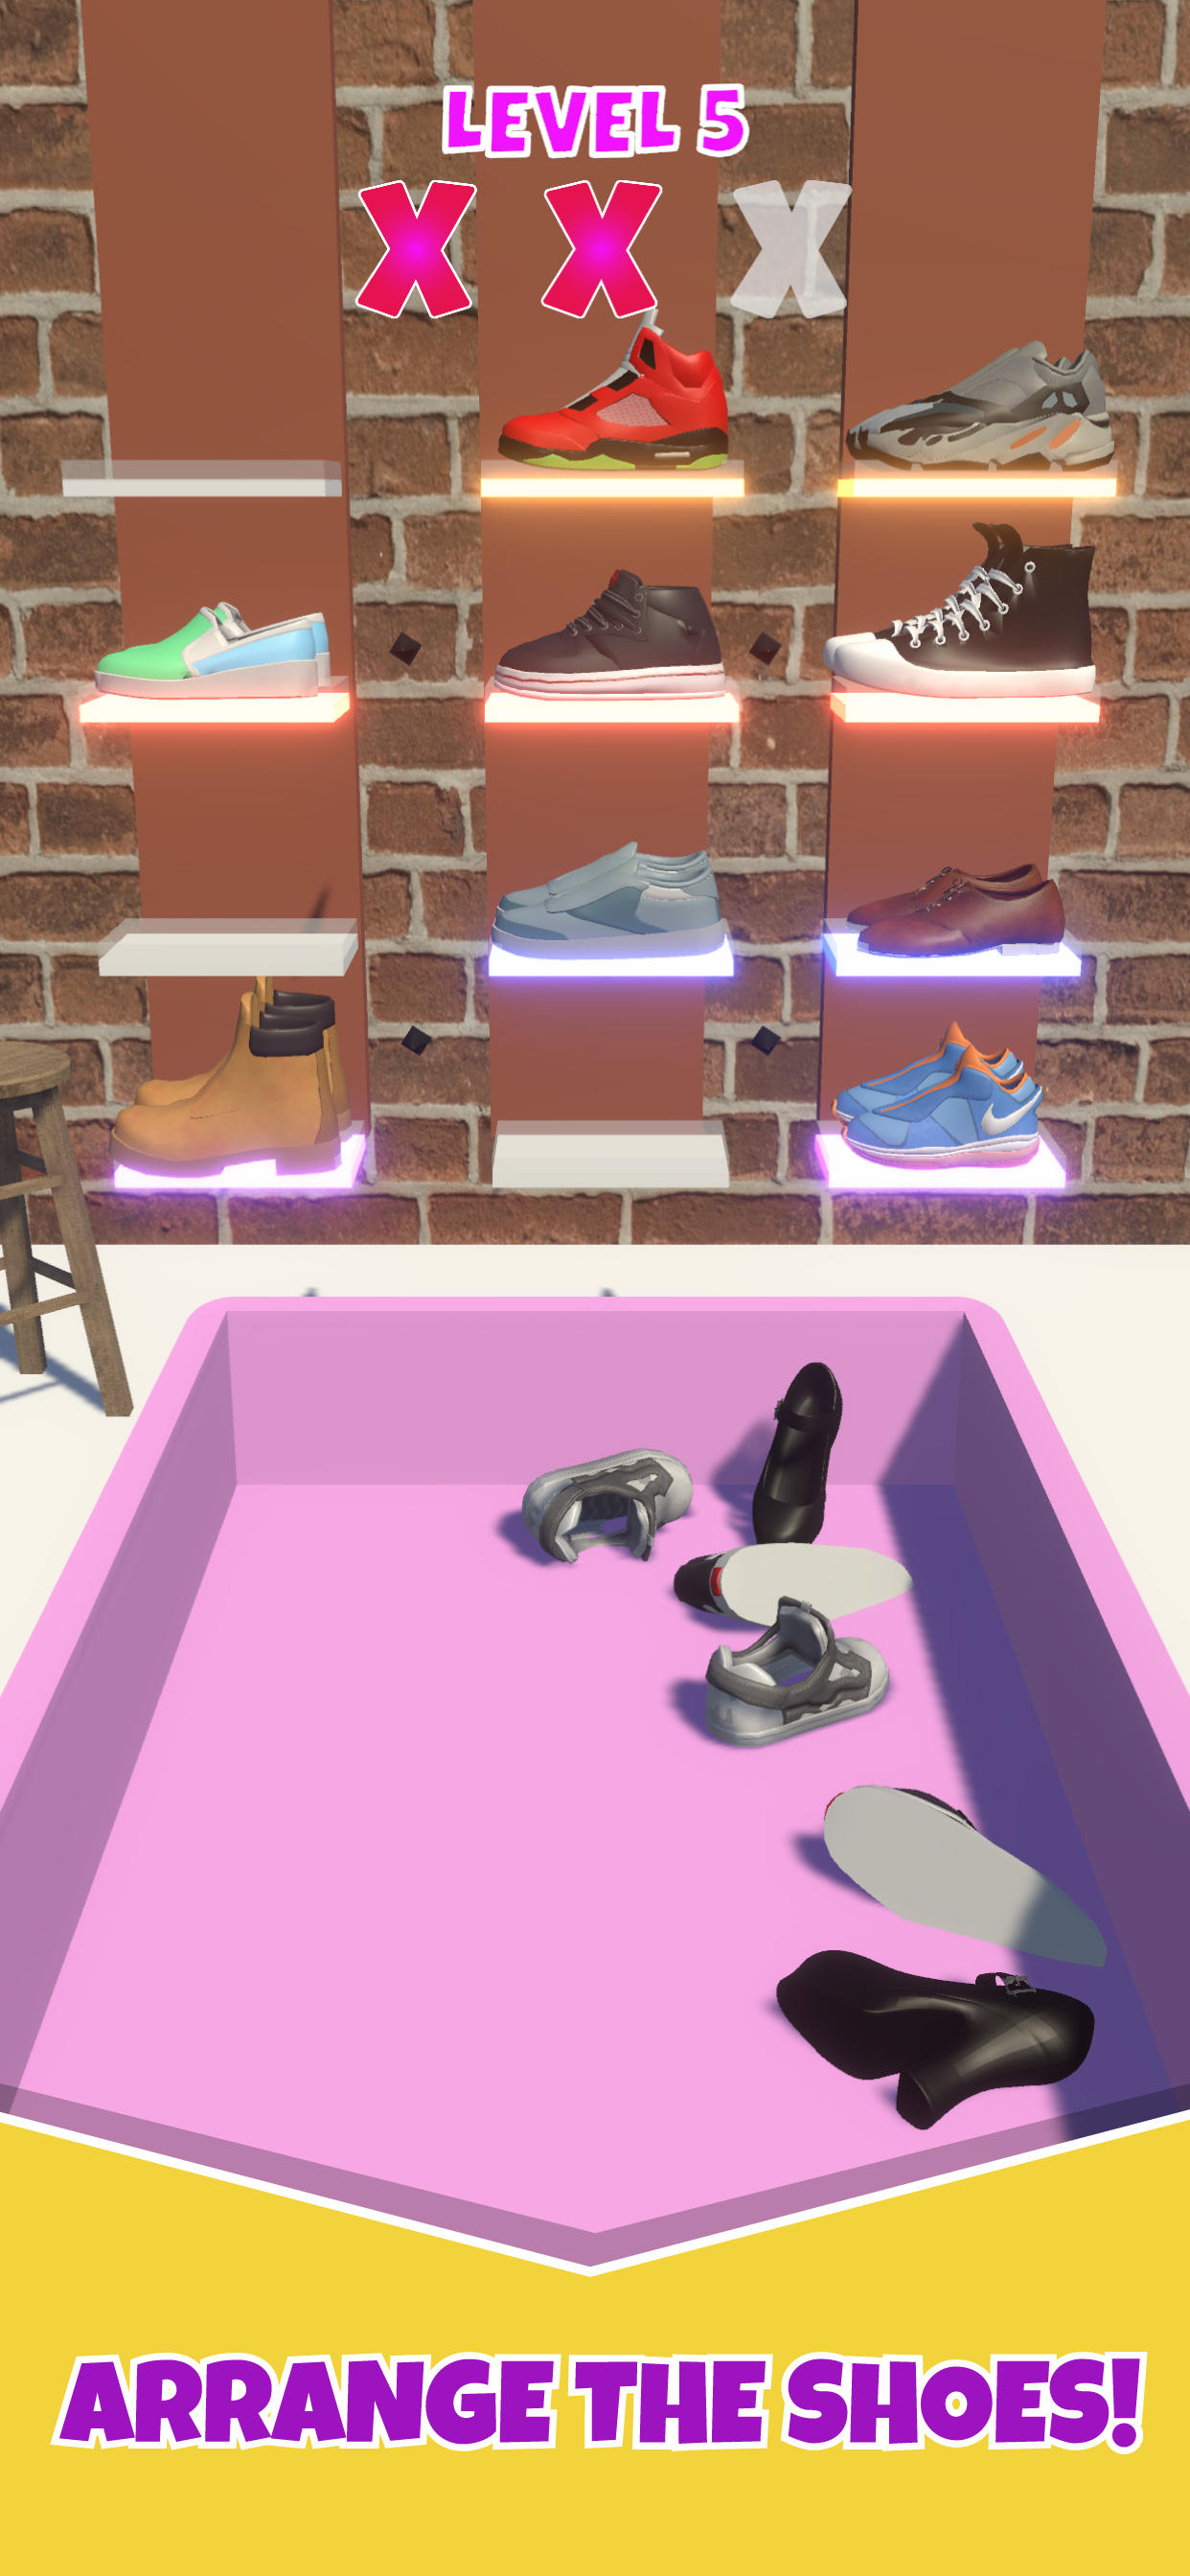 Screenshot 1 of Fashion Design: Shoe Match 3D 0.1